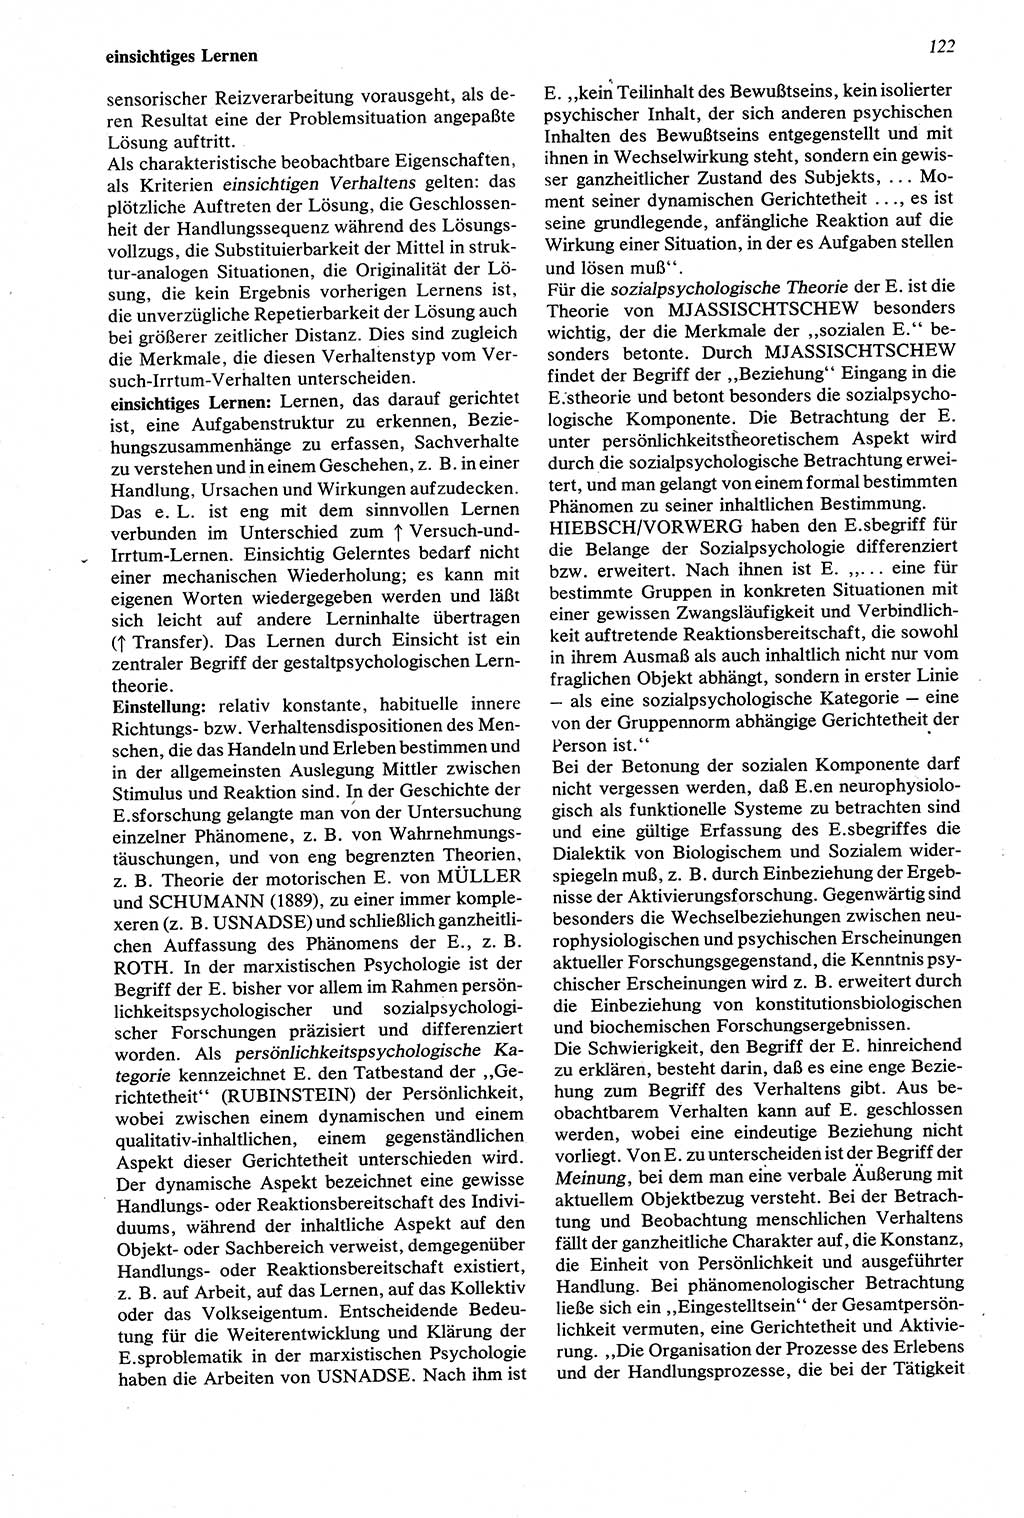 Wörterbuch der Psychologie [Deutsche Demokratische Republik (DDR)] 1976, Seite 122 (Wb. Psych. DDR 1976, S. 122)